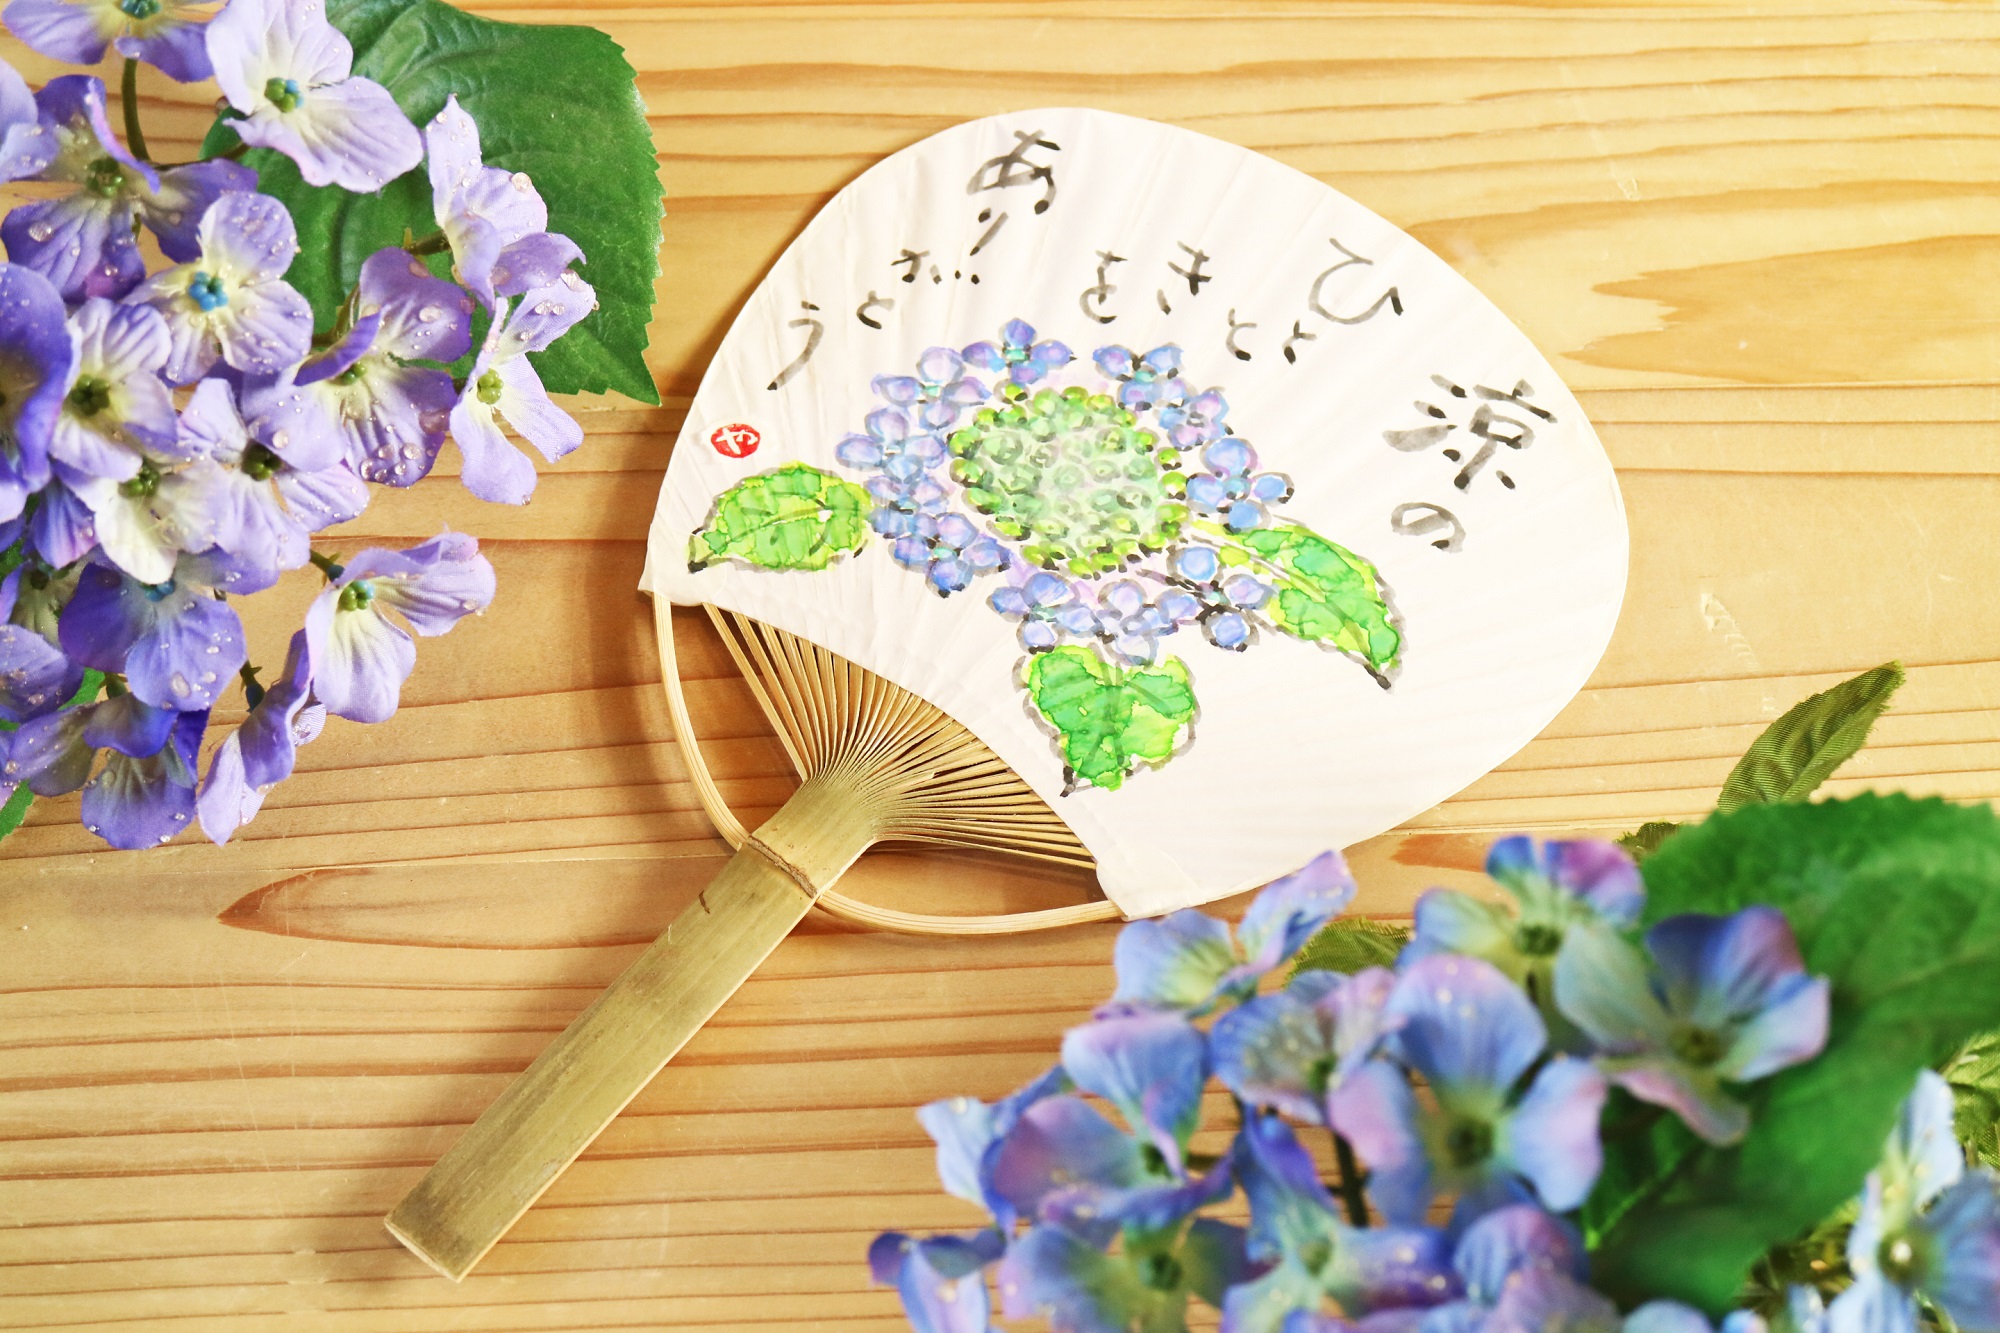 夏の絵手紙教室「ミニうちわに夏の花を描こう」